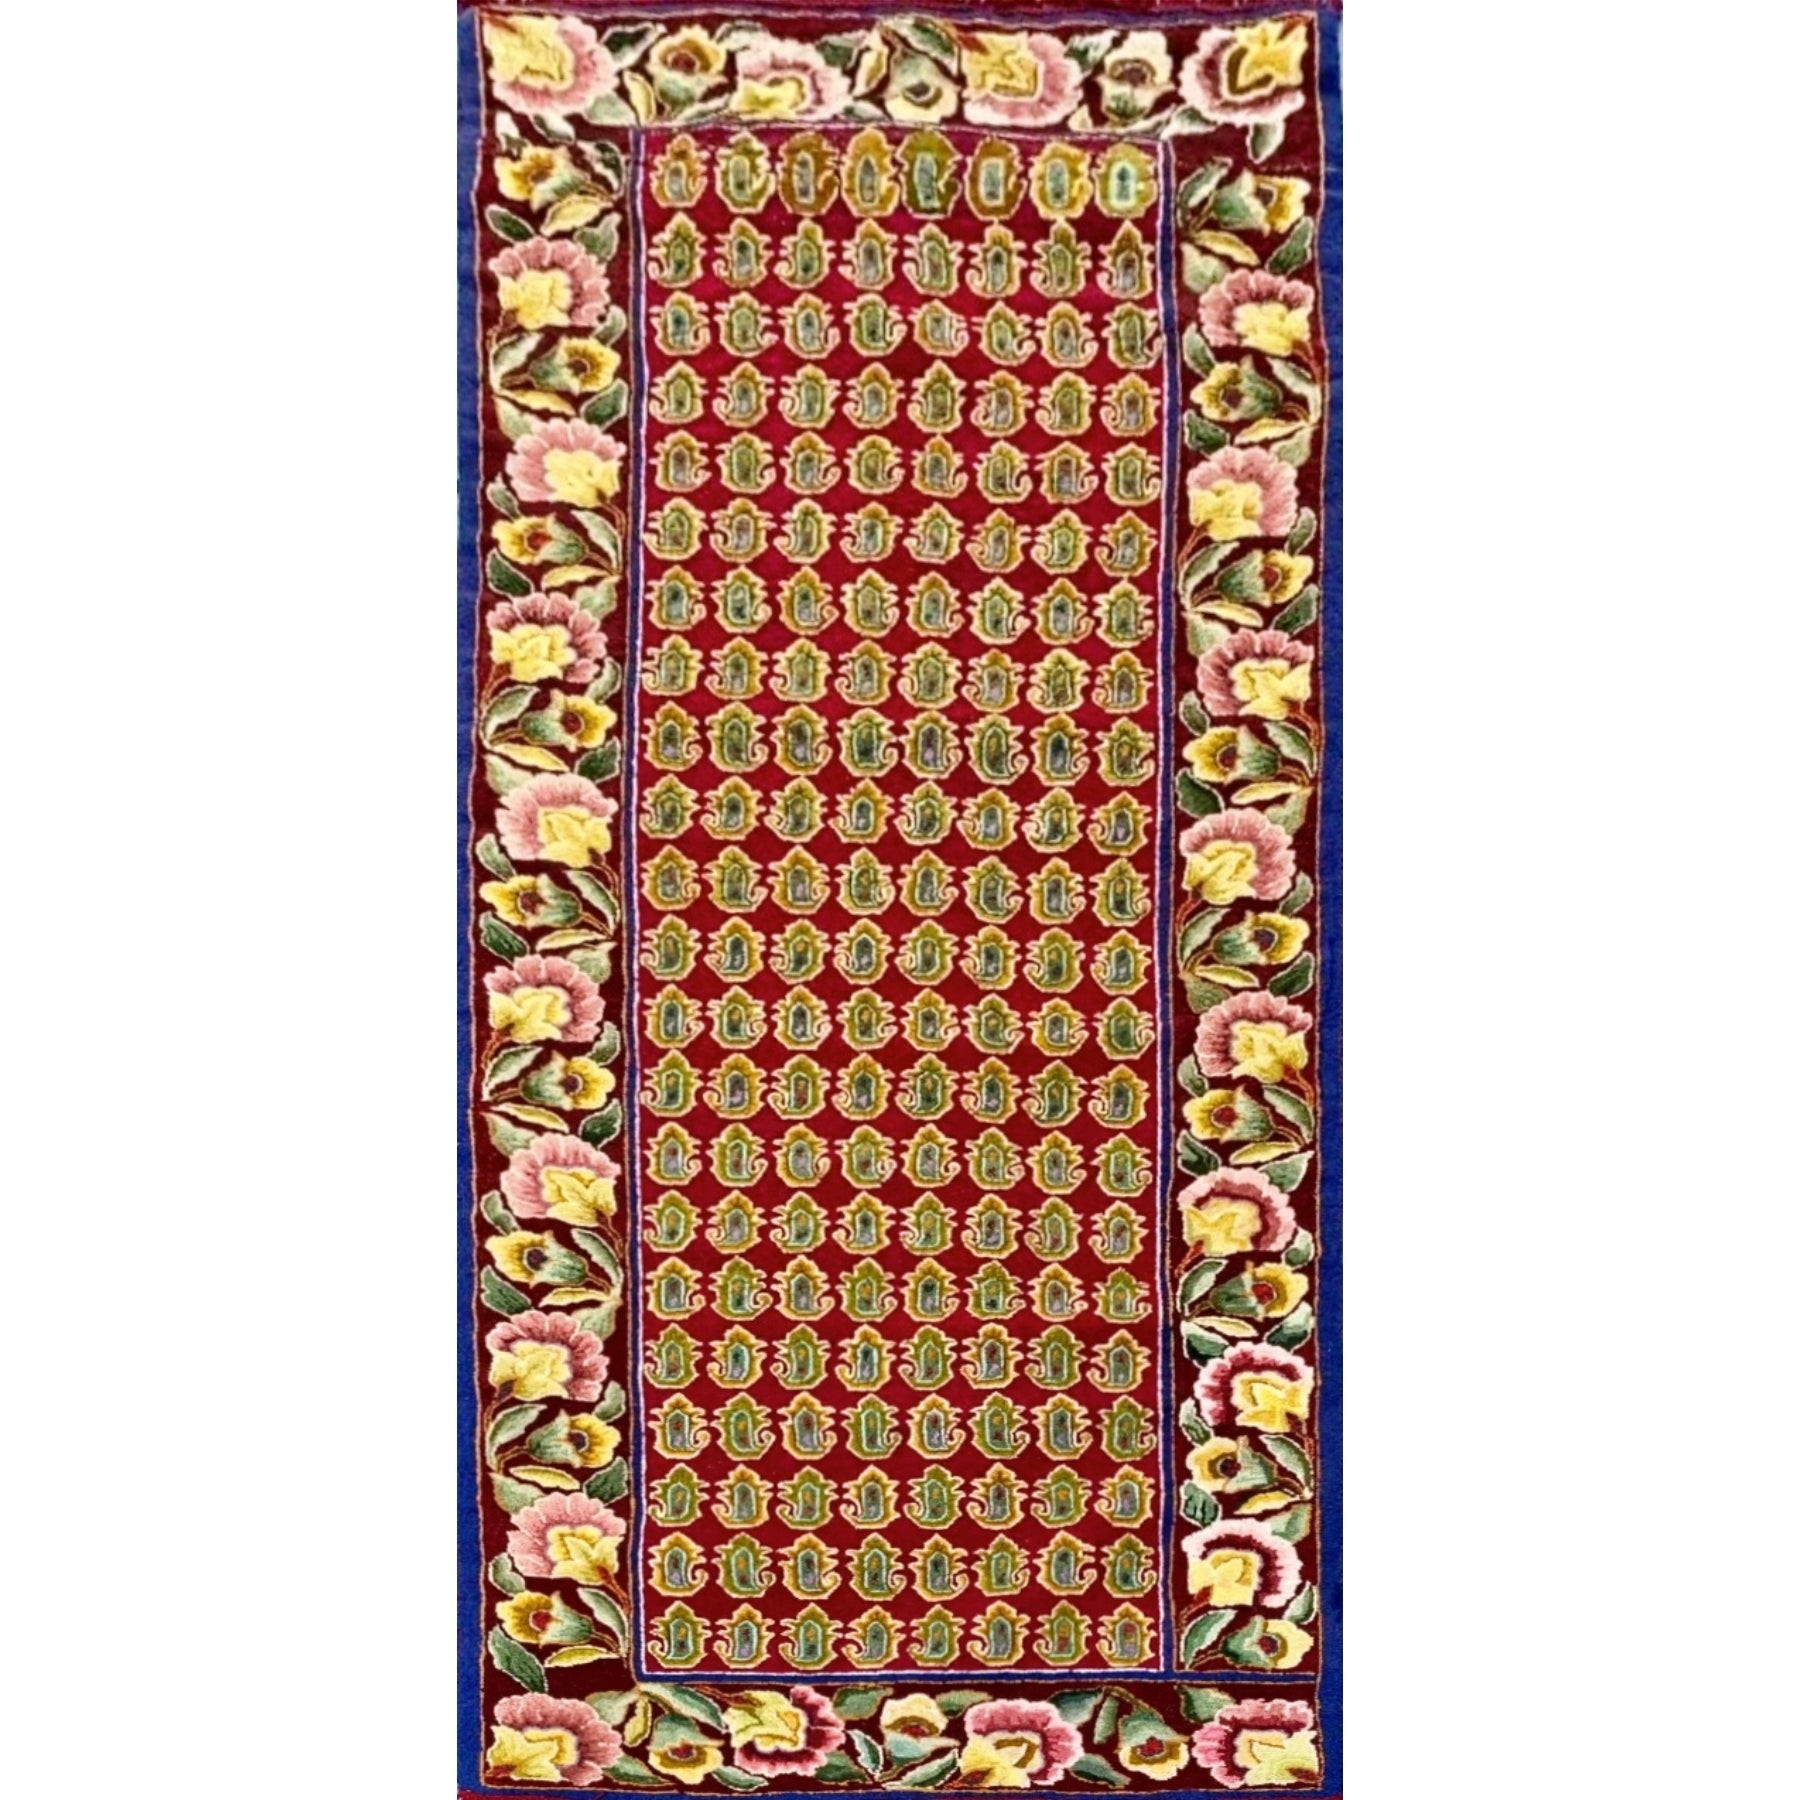 Trinity, rug hooked by Pat Lafleur